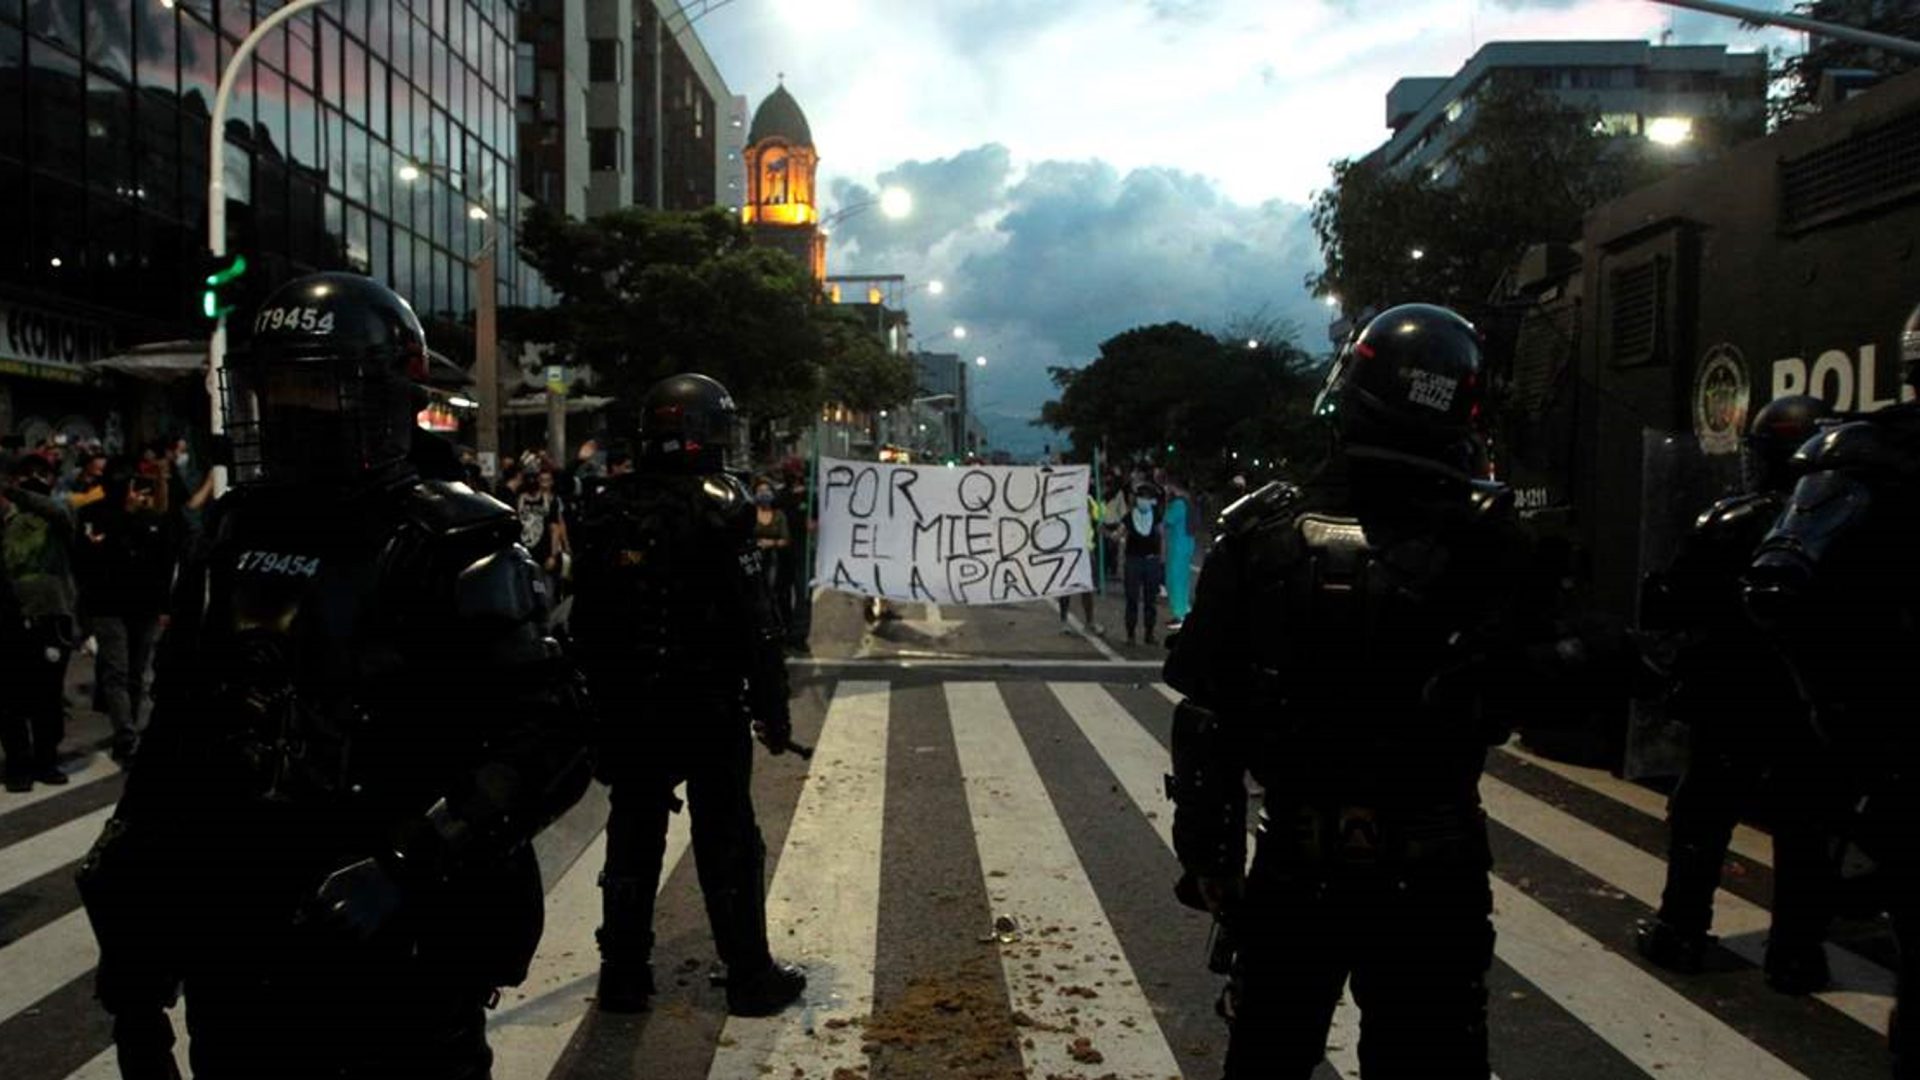 Uso de la fuerza en el marco de protestas sociales: los retos en Latinoamérica - un diagnóstico preliminar